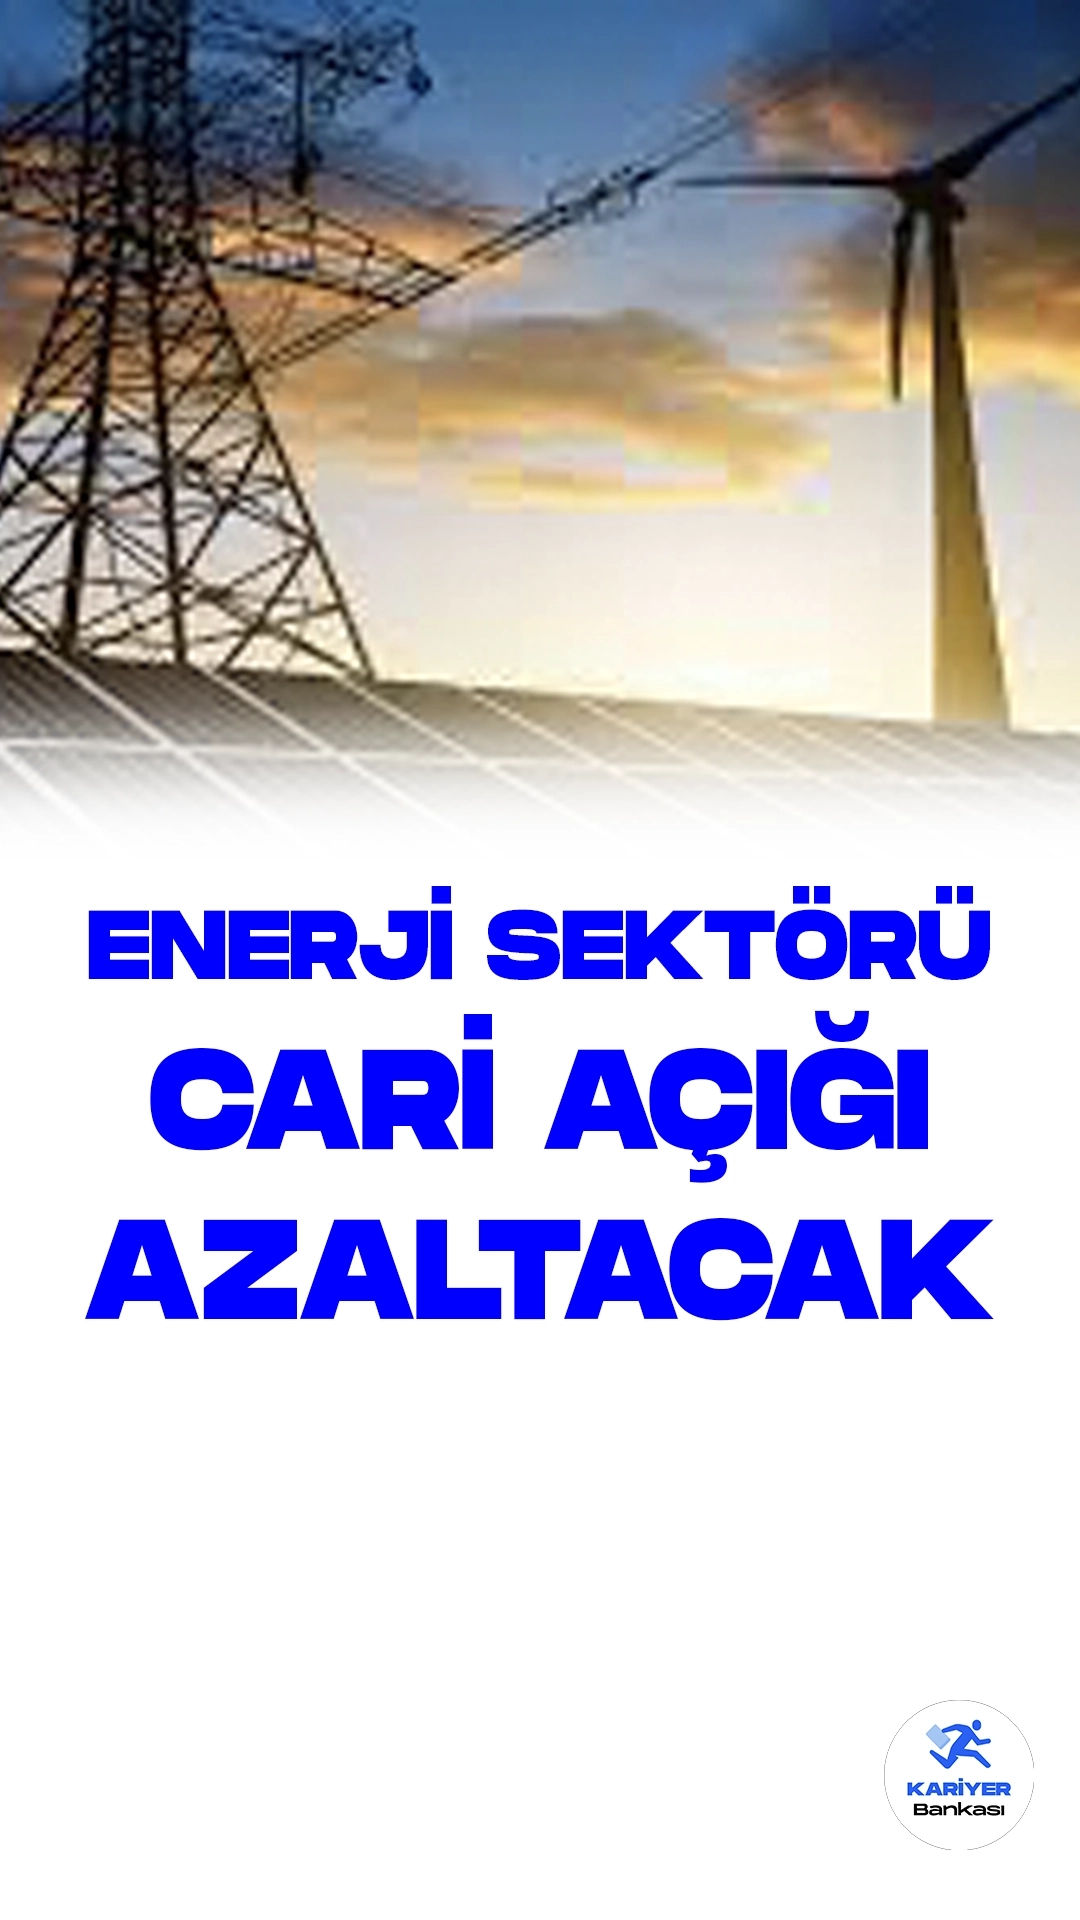 Enerji Projeleri Cari Açığı Azaltmada Lider Rol Oynayacak.Türkiye'de yeraltı zenginliklerinin ekonomiye kazandırılması ve yerli enerji üretim kapasitesinin artırılmasına yönelik atılan adımlar, cari açığın azaltılmasına katkı sağlayacak. Türkiye Cumhuriyet Merkez Bankası (TCMB) verilerine göre, Türkiye'nin orta vadede cari açığın azaltılmasına katkı sağlayacak 289 milyar dolarlık kaynağı bulunuyor. 2023-2030 yıllarını kapsayan dönemde cari fazla kapasitesini artırmaya dönük yatırım ve desteklerin yüzde 35,2'sinin teknoloji yatırımlarından, yüzde 21,4'ünün ise turizm gelirindeki artıştan karşılanması bekleniyor.